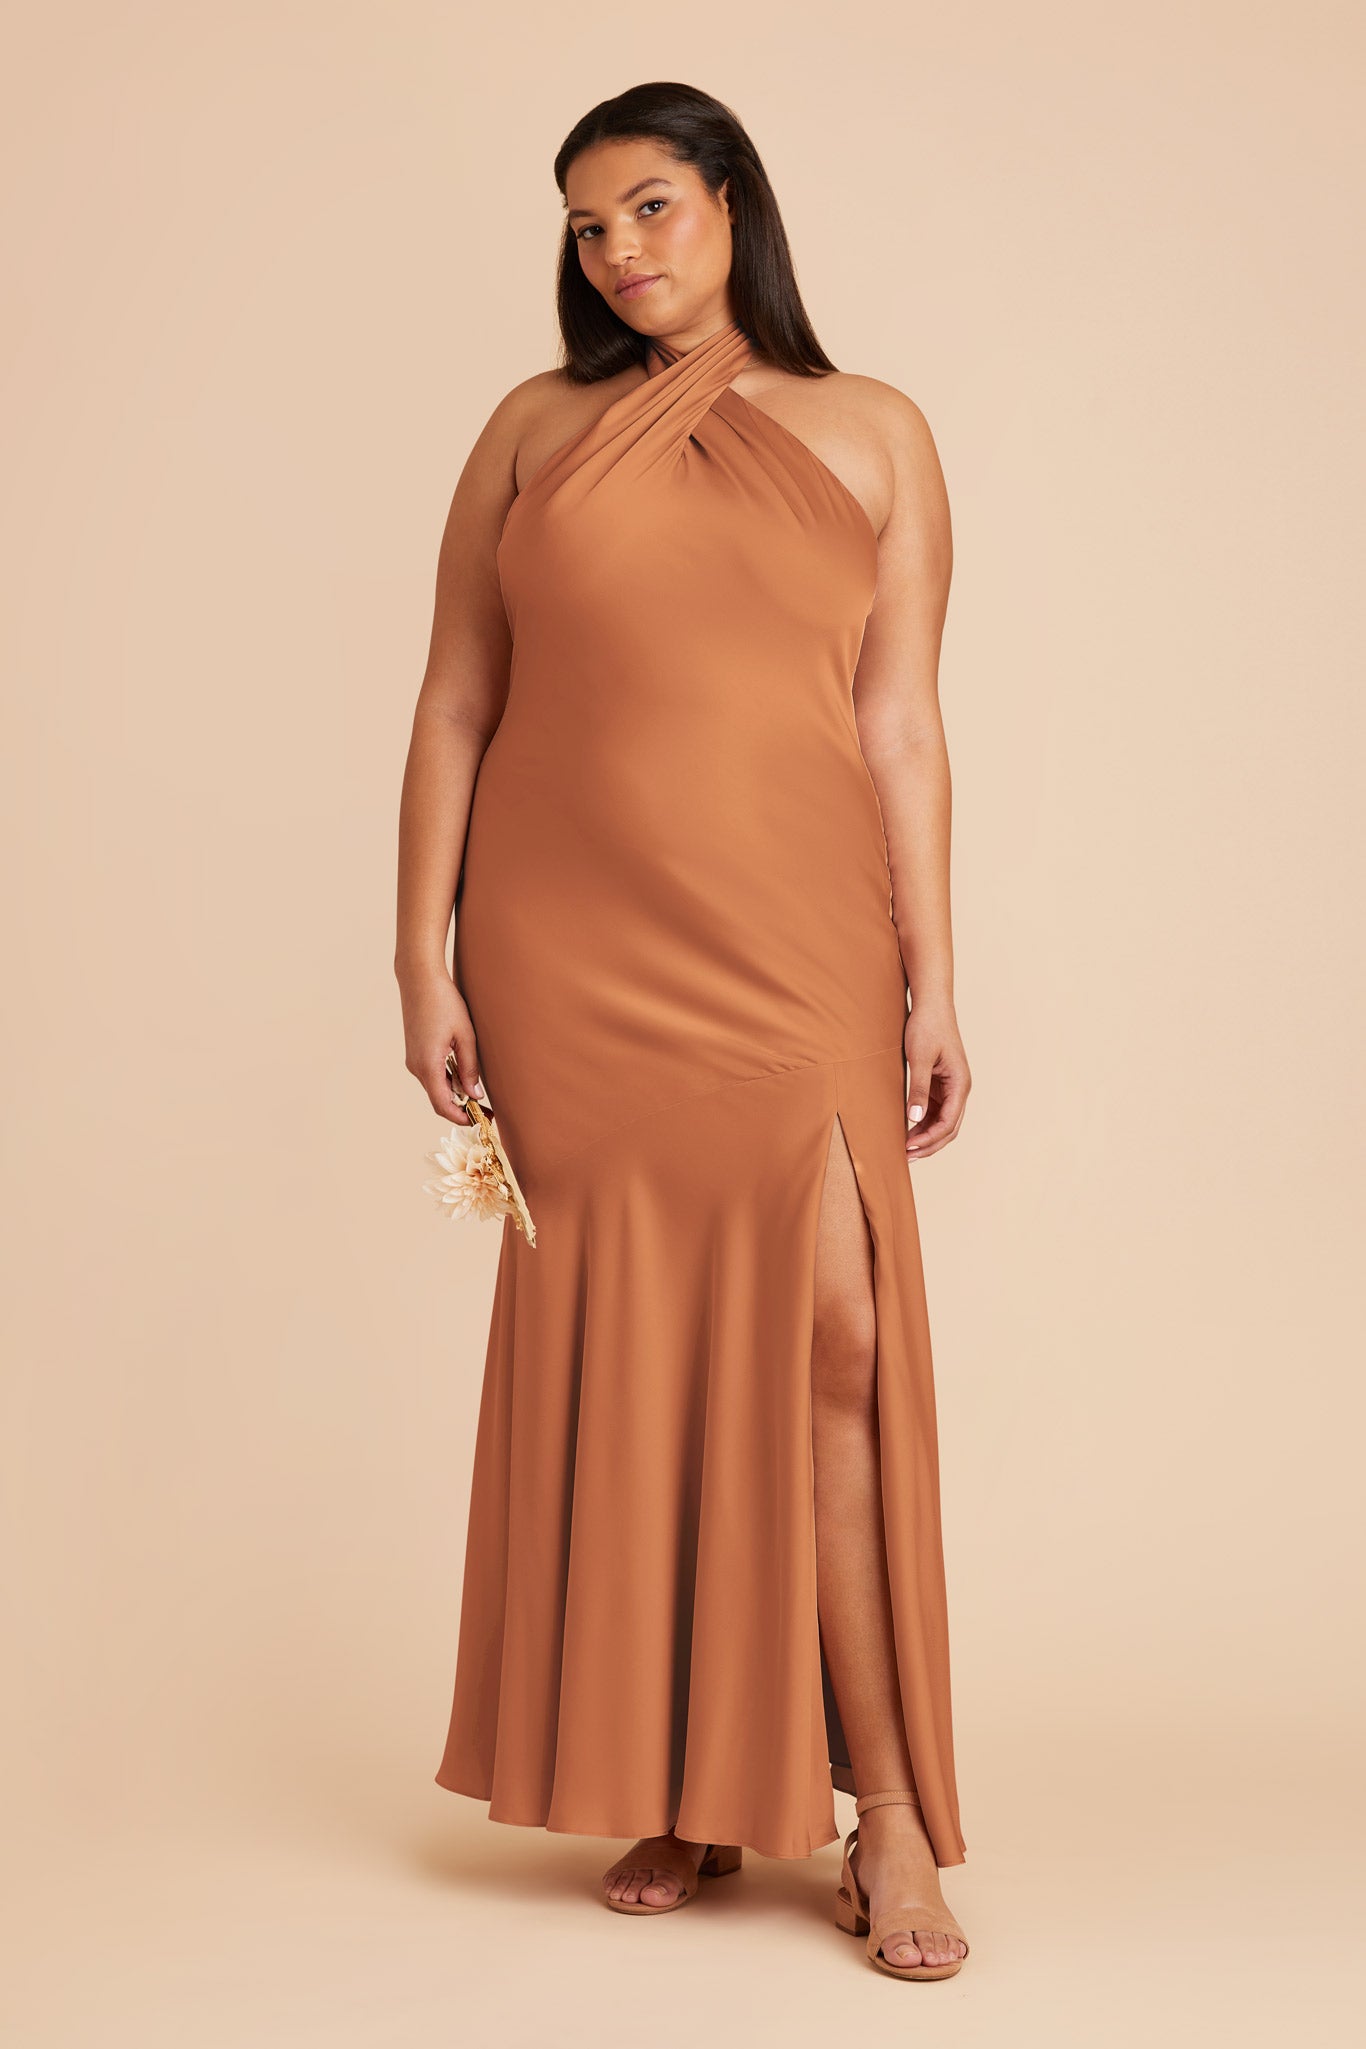 Rust Stephanie Matte Satin Dress by Birdy Grey